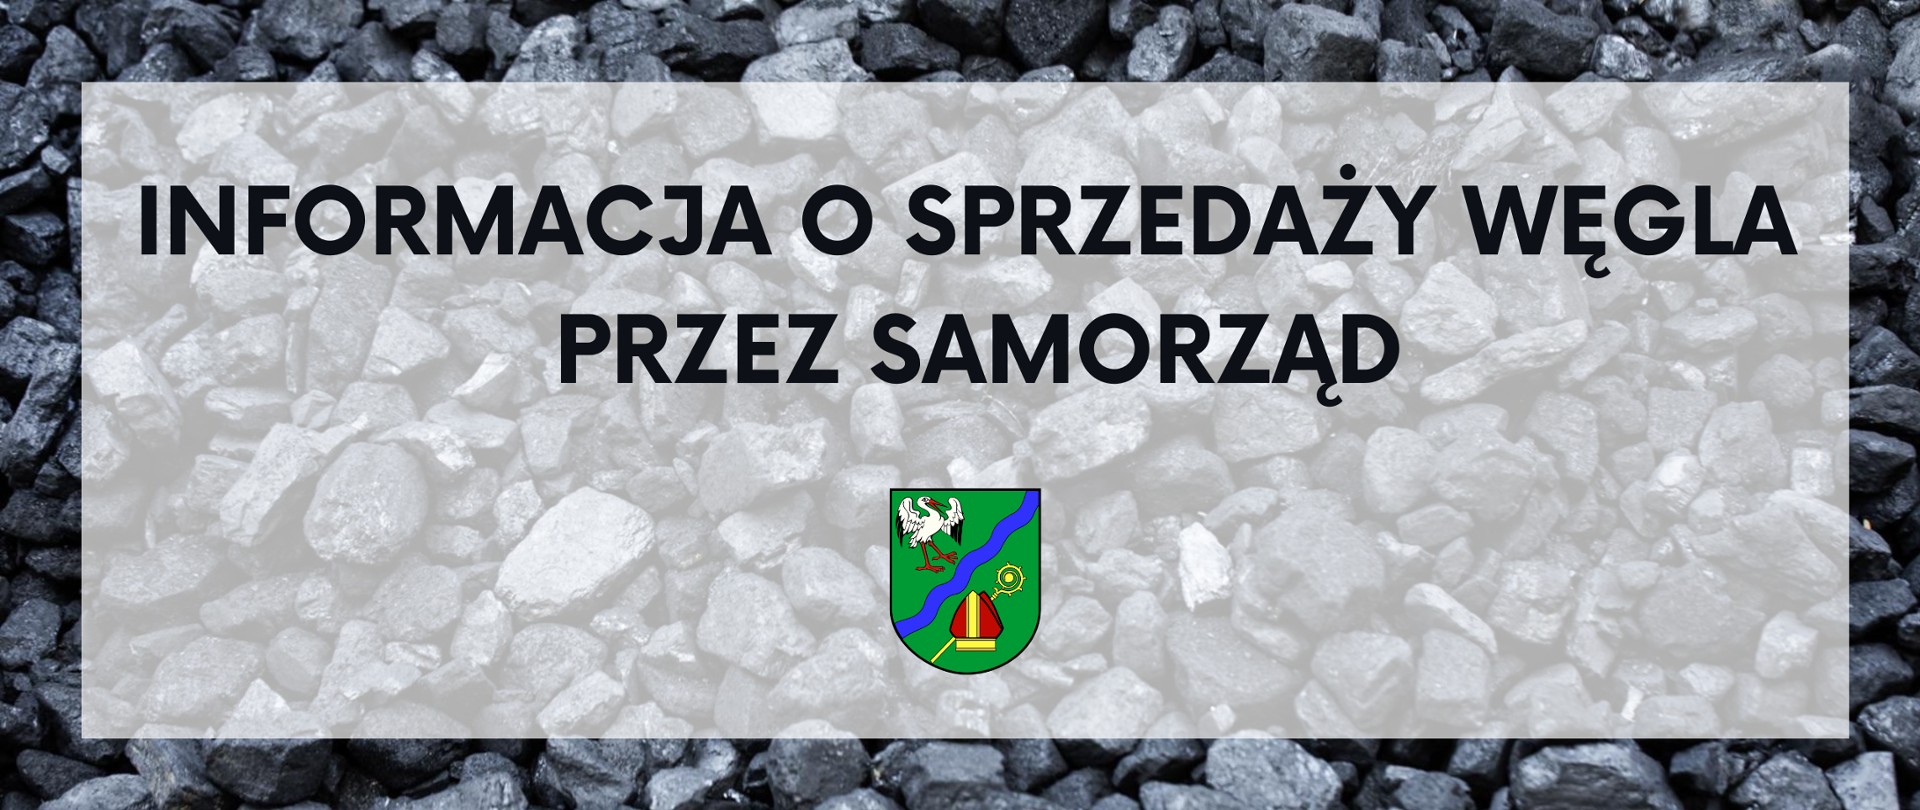 W tle węgiel kamienny, na pierwszym planie tekst: "Informacja o sprzedaży węgla przez samorząd" i herb gminy Brańszczyk